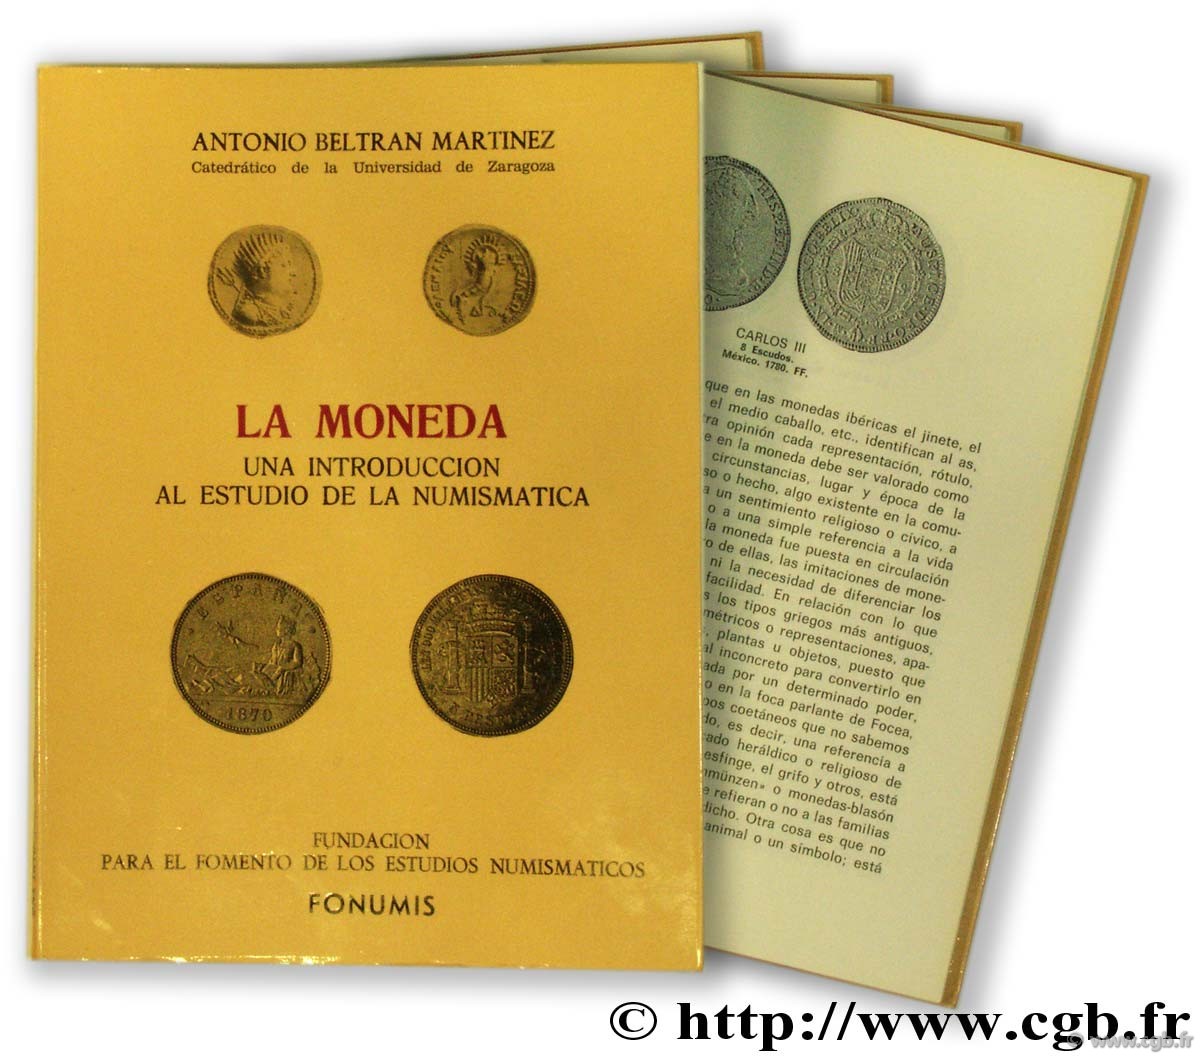 La moneda, una introduccion al estudio de la numismatica BELTRAN MARTINEZ A.